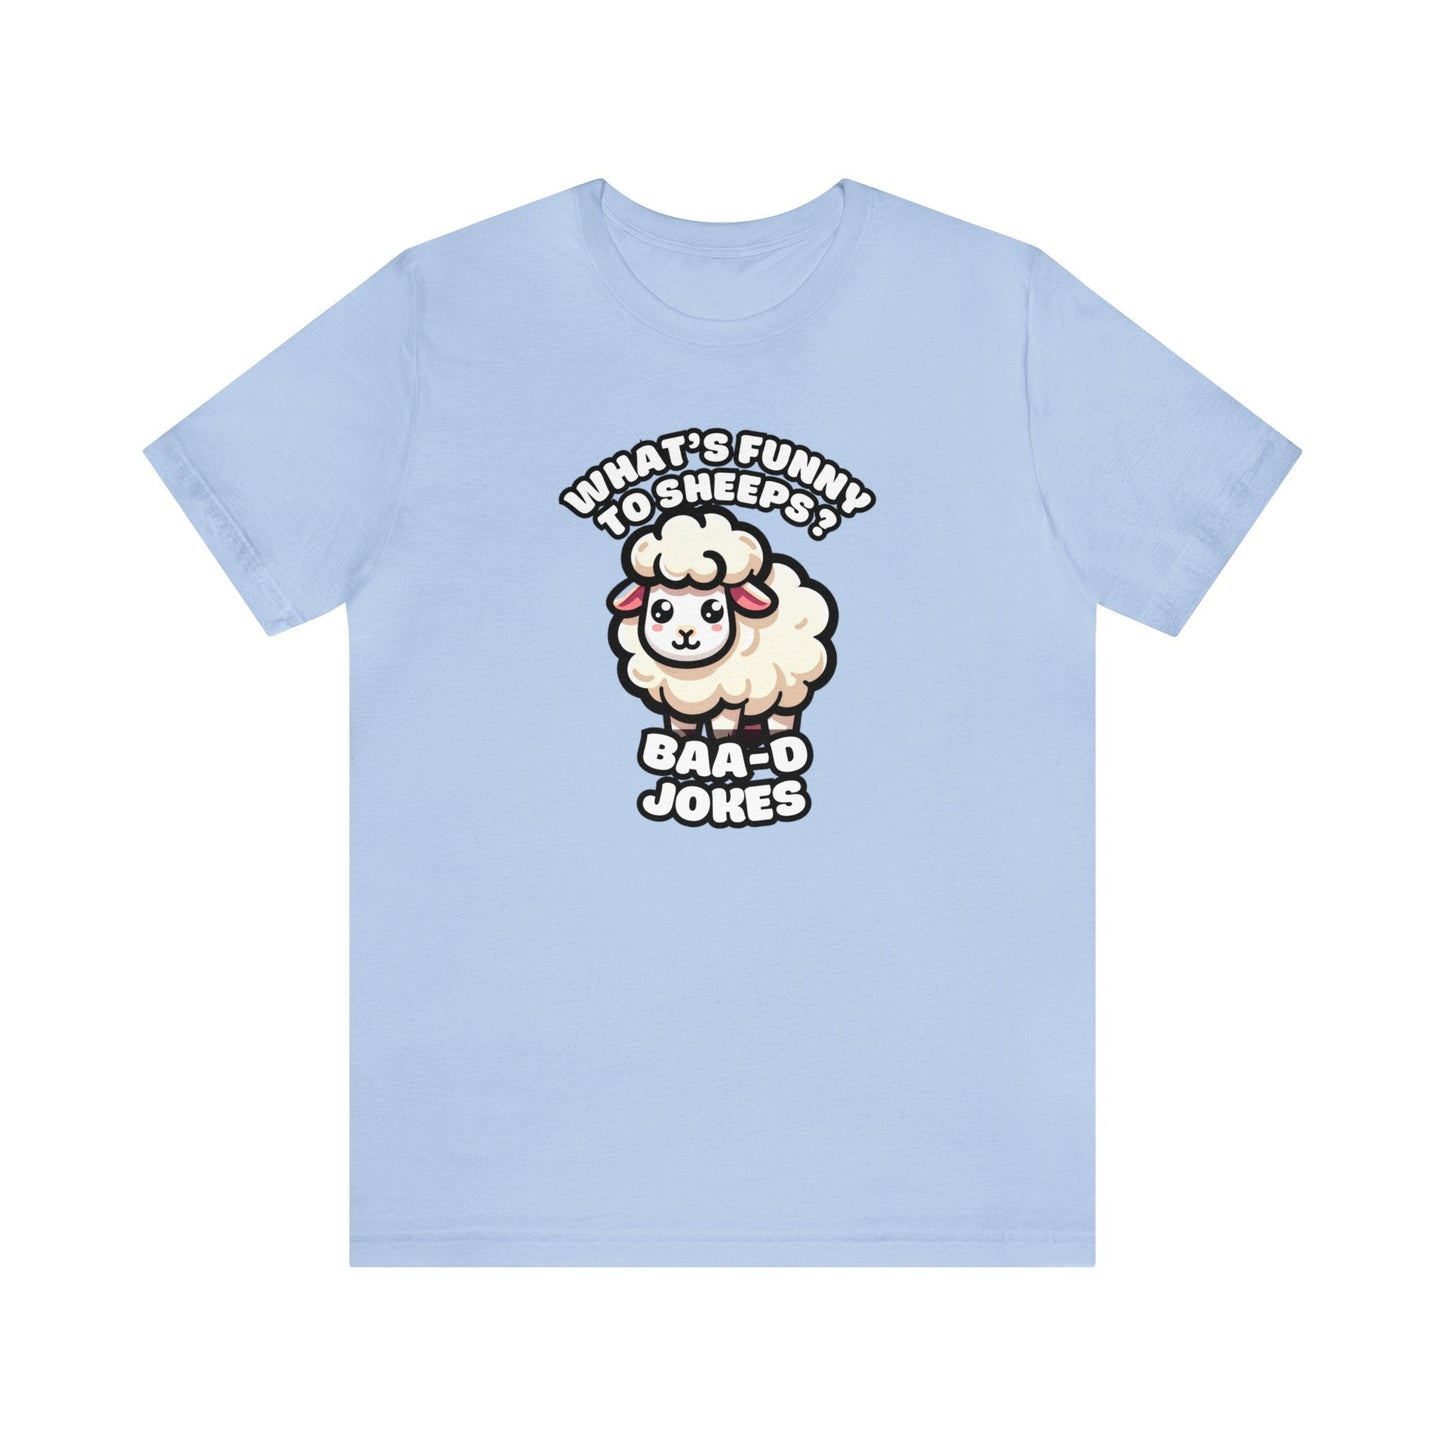 Baa-d Jokes - Sheep T-shirt Baby Blue / S